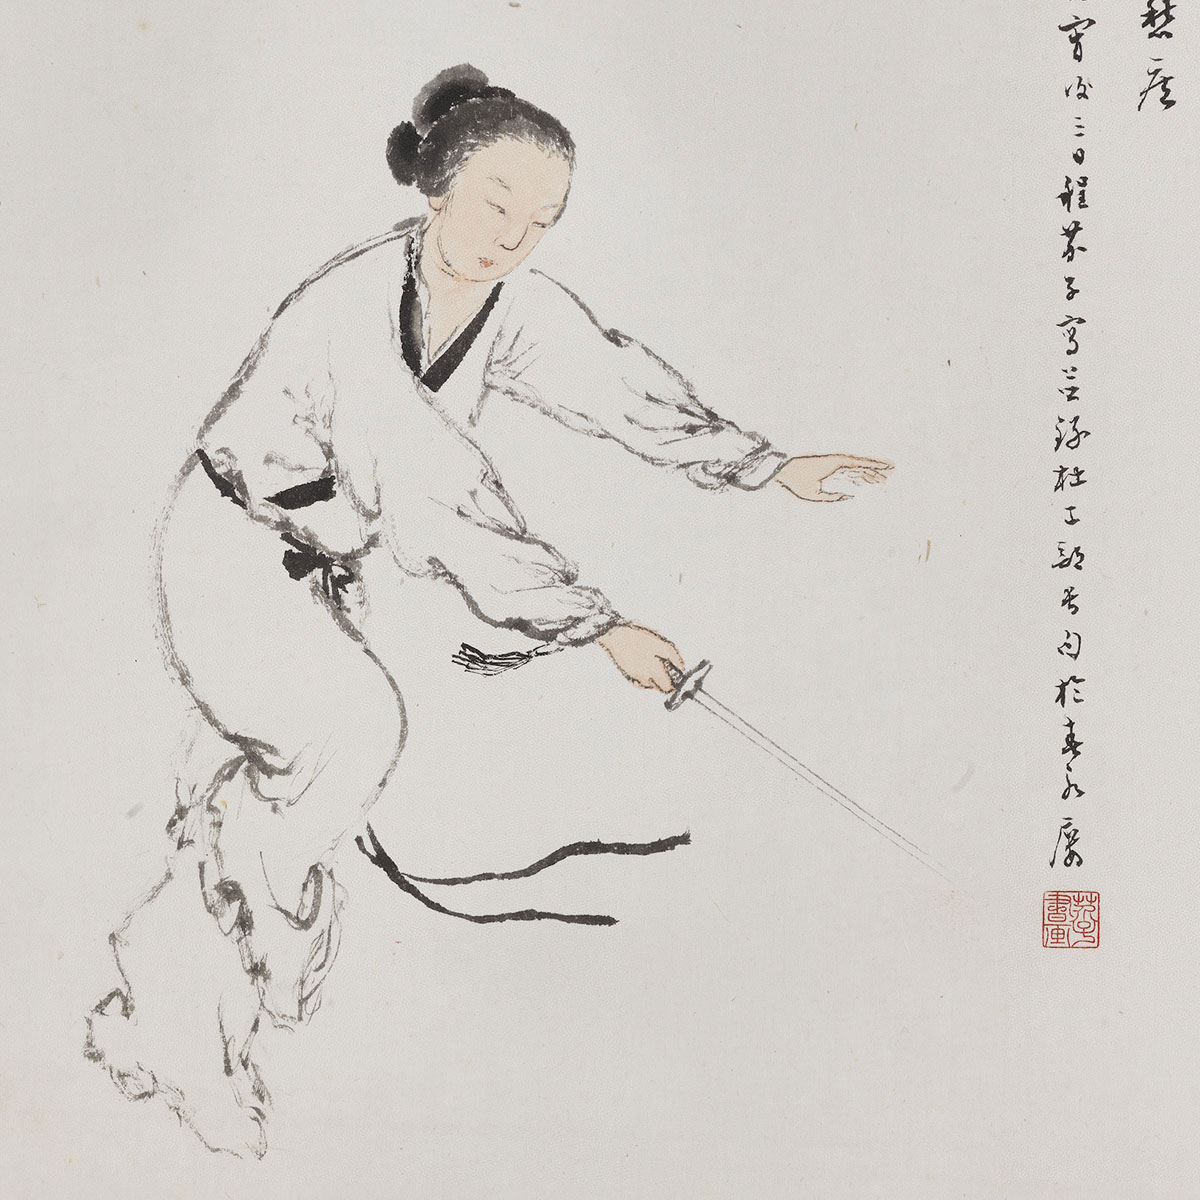 Lady Gongsun's Sword Dance